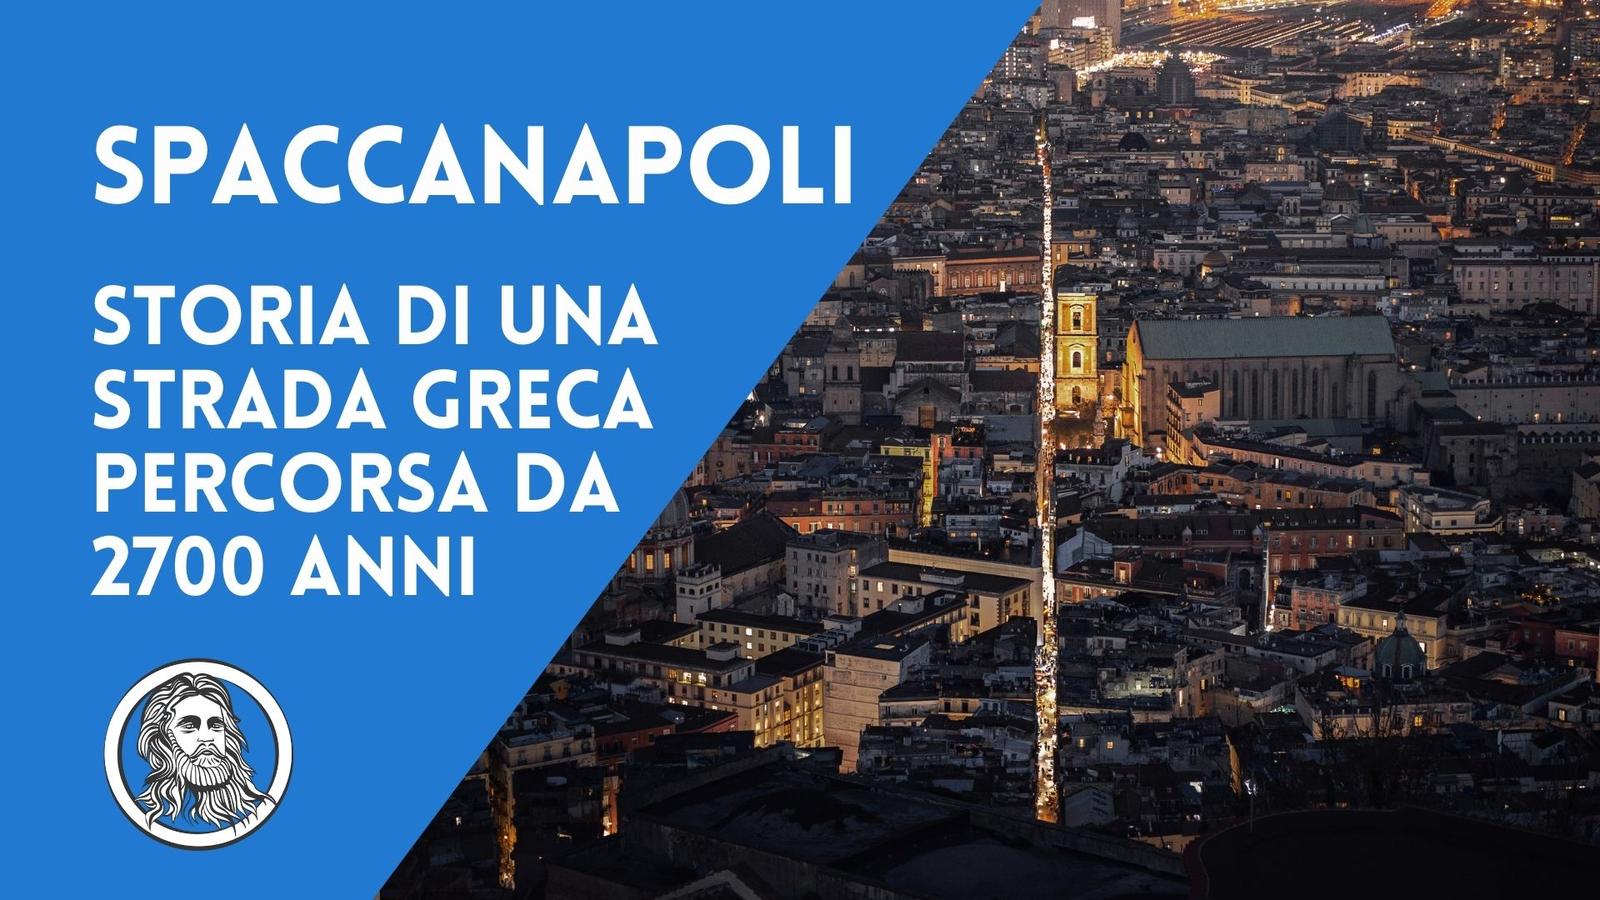 Spaccanapoli, la strada greca testimone di tutta la storia di Napoli